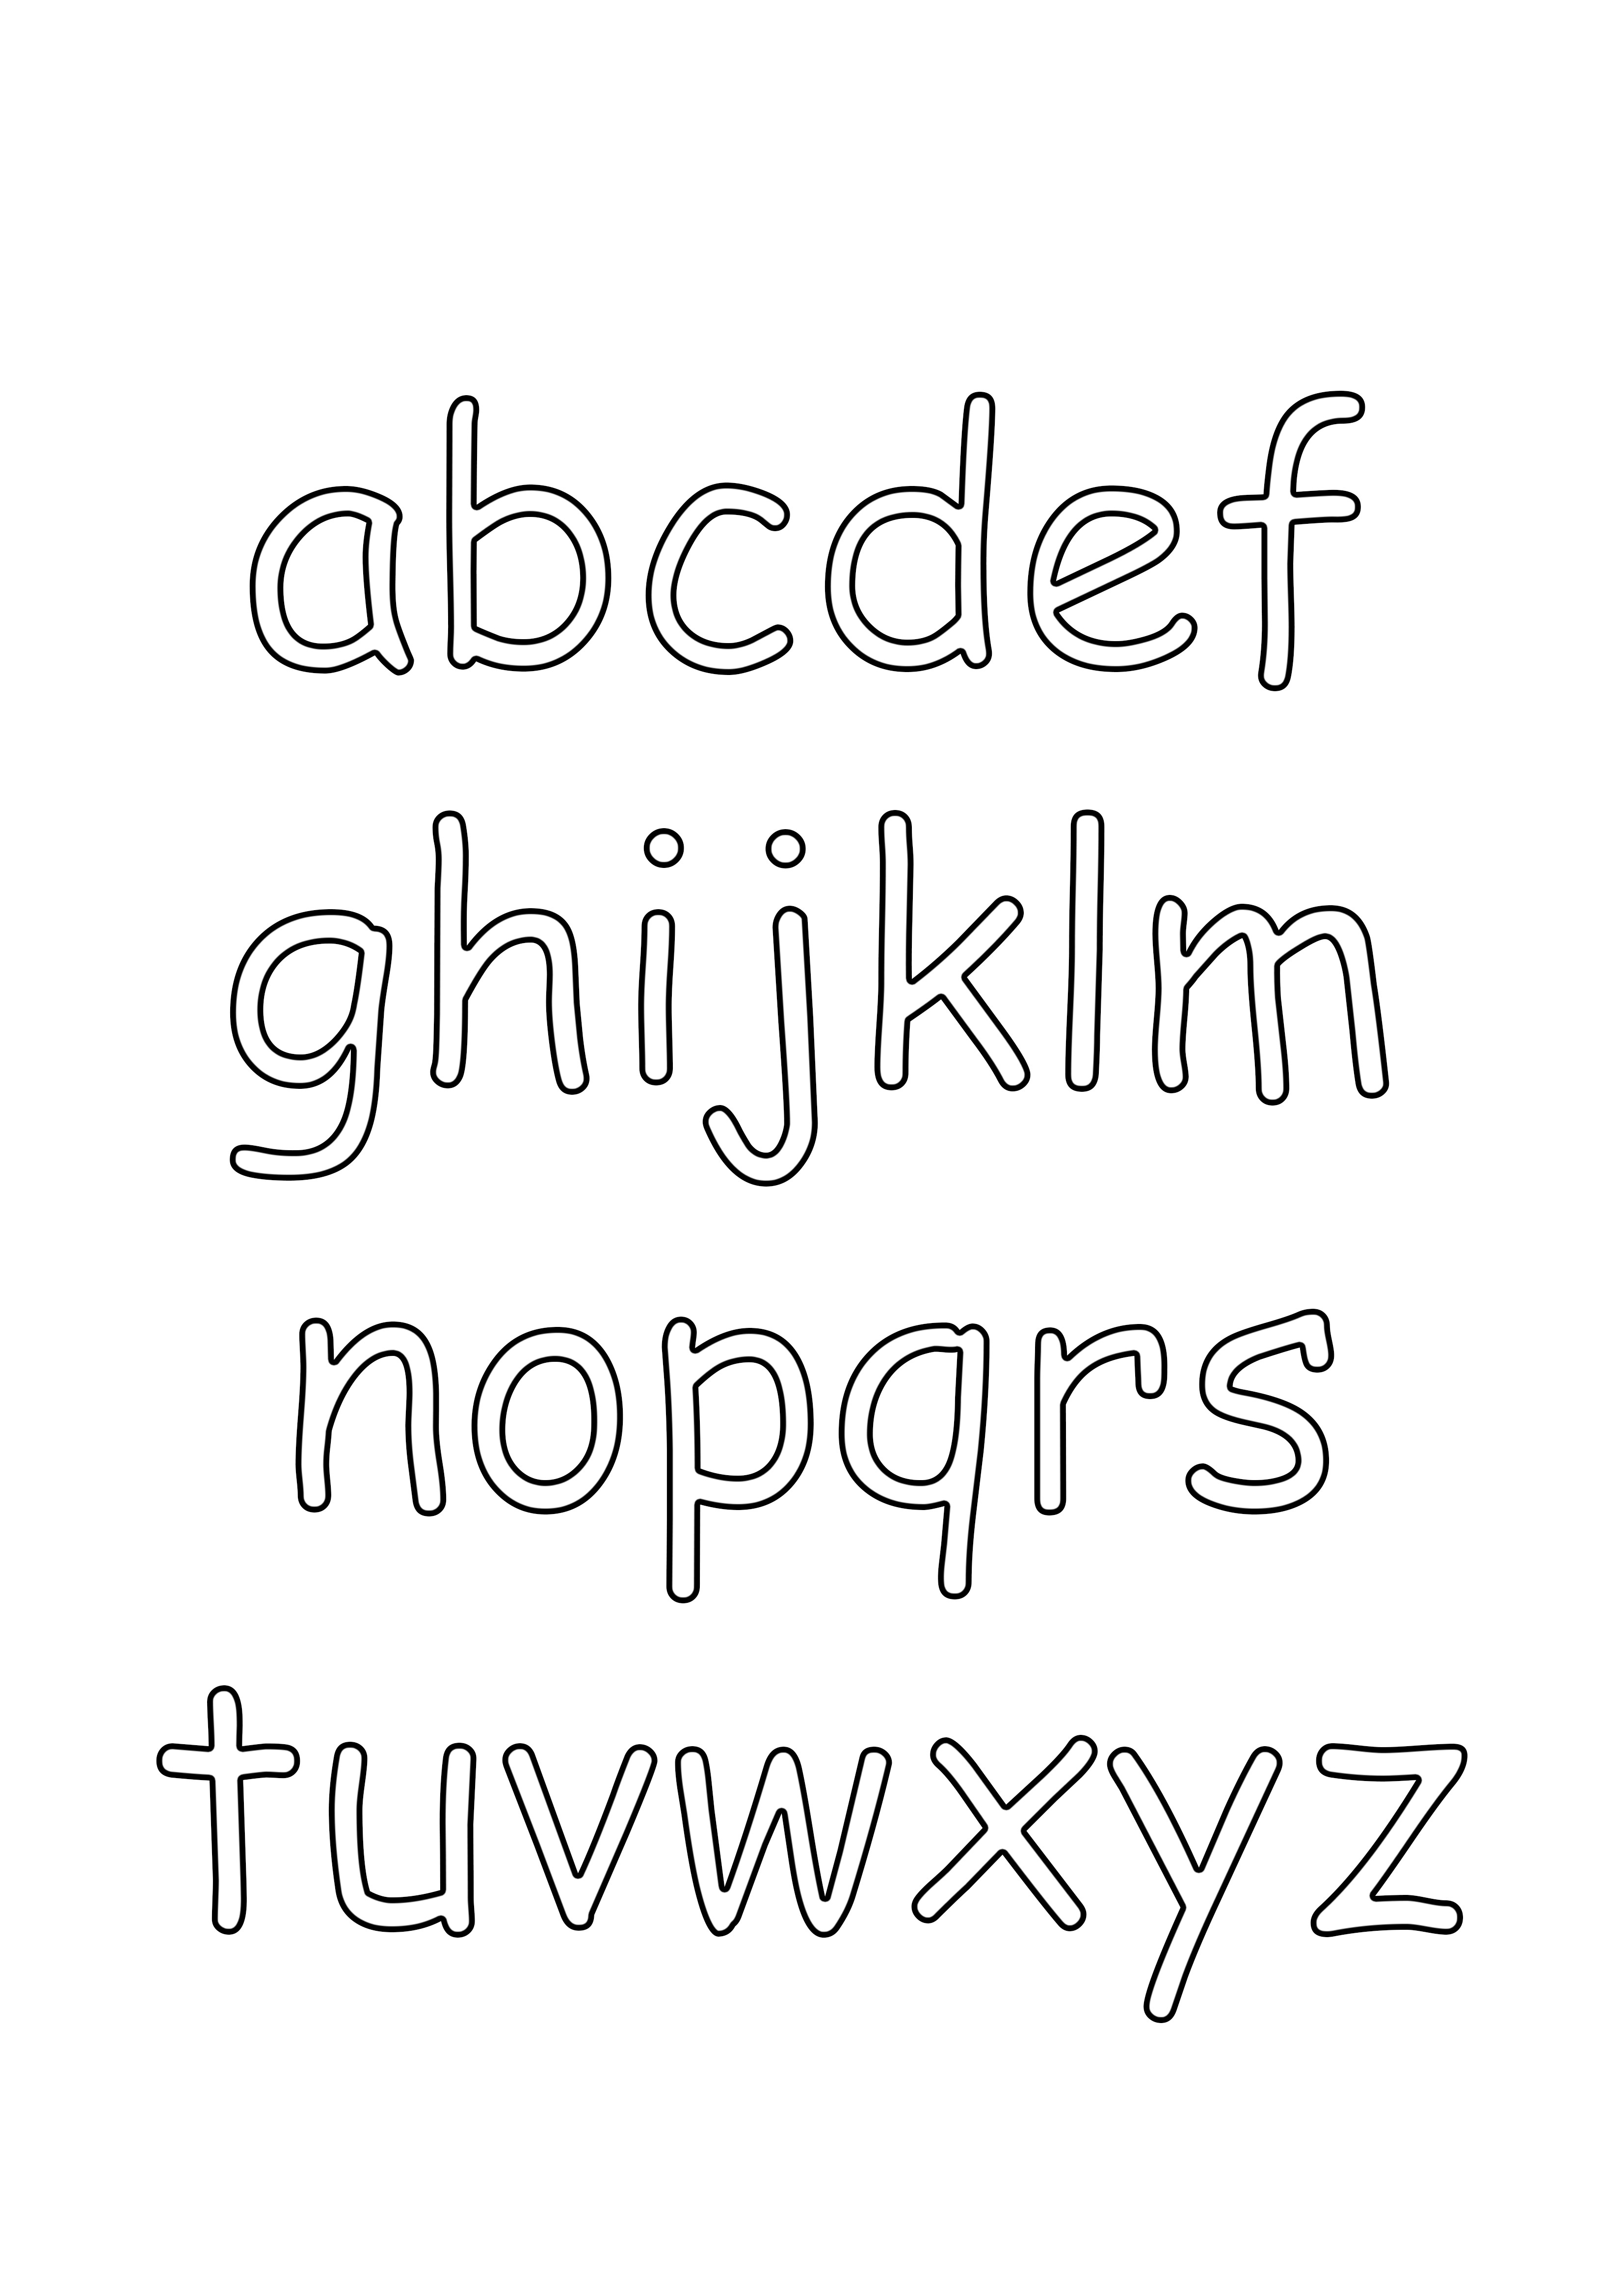 küçük harfli alfabe boyama ve ücretsiz baskı